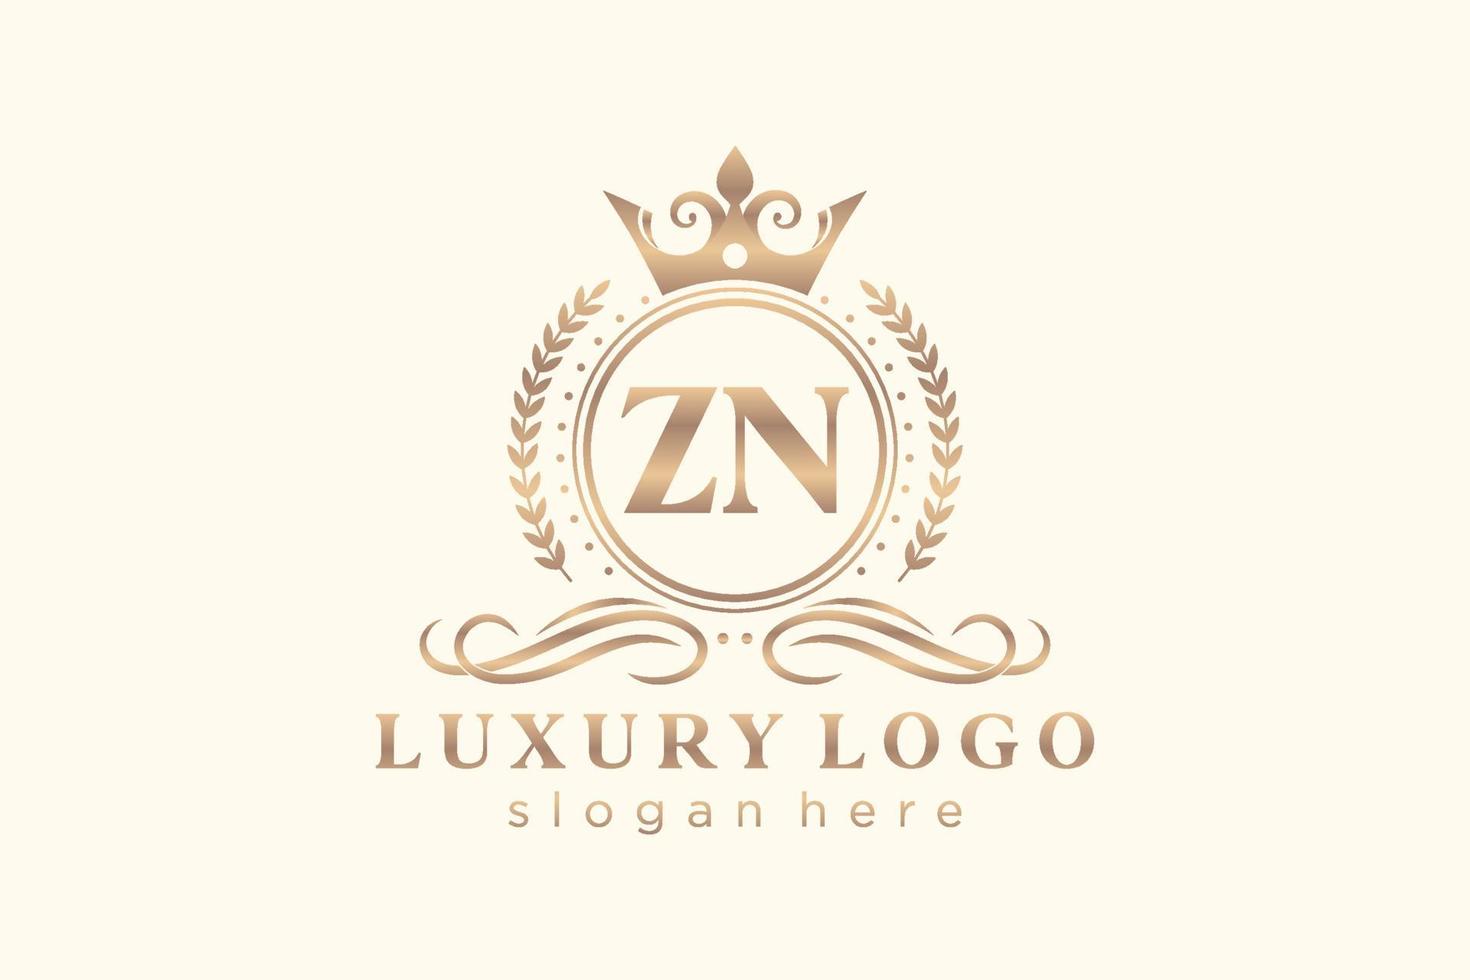 modèle initial de logo de luxe royal de lettre zn dans l'art vectoriel pour le restaurant, la royauté, la boutique, le café, l'hôtel, l'héraldique, les bijoux, la mode et d'autres illustrations vectorielles.